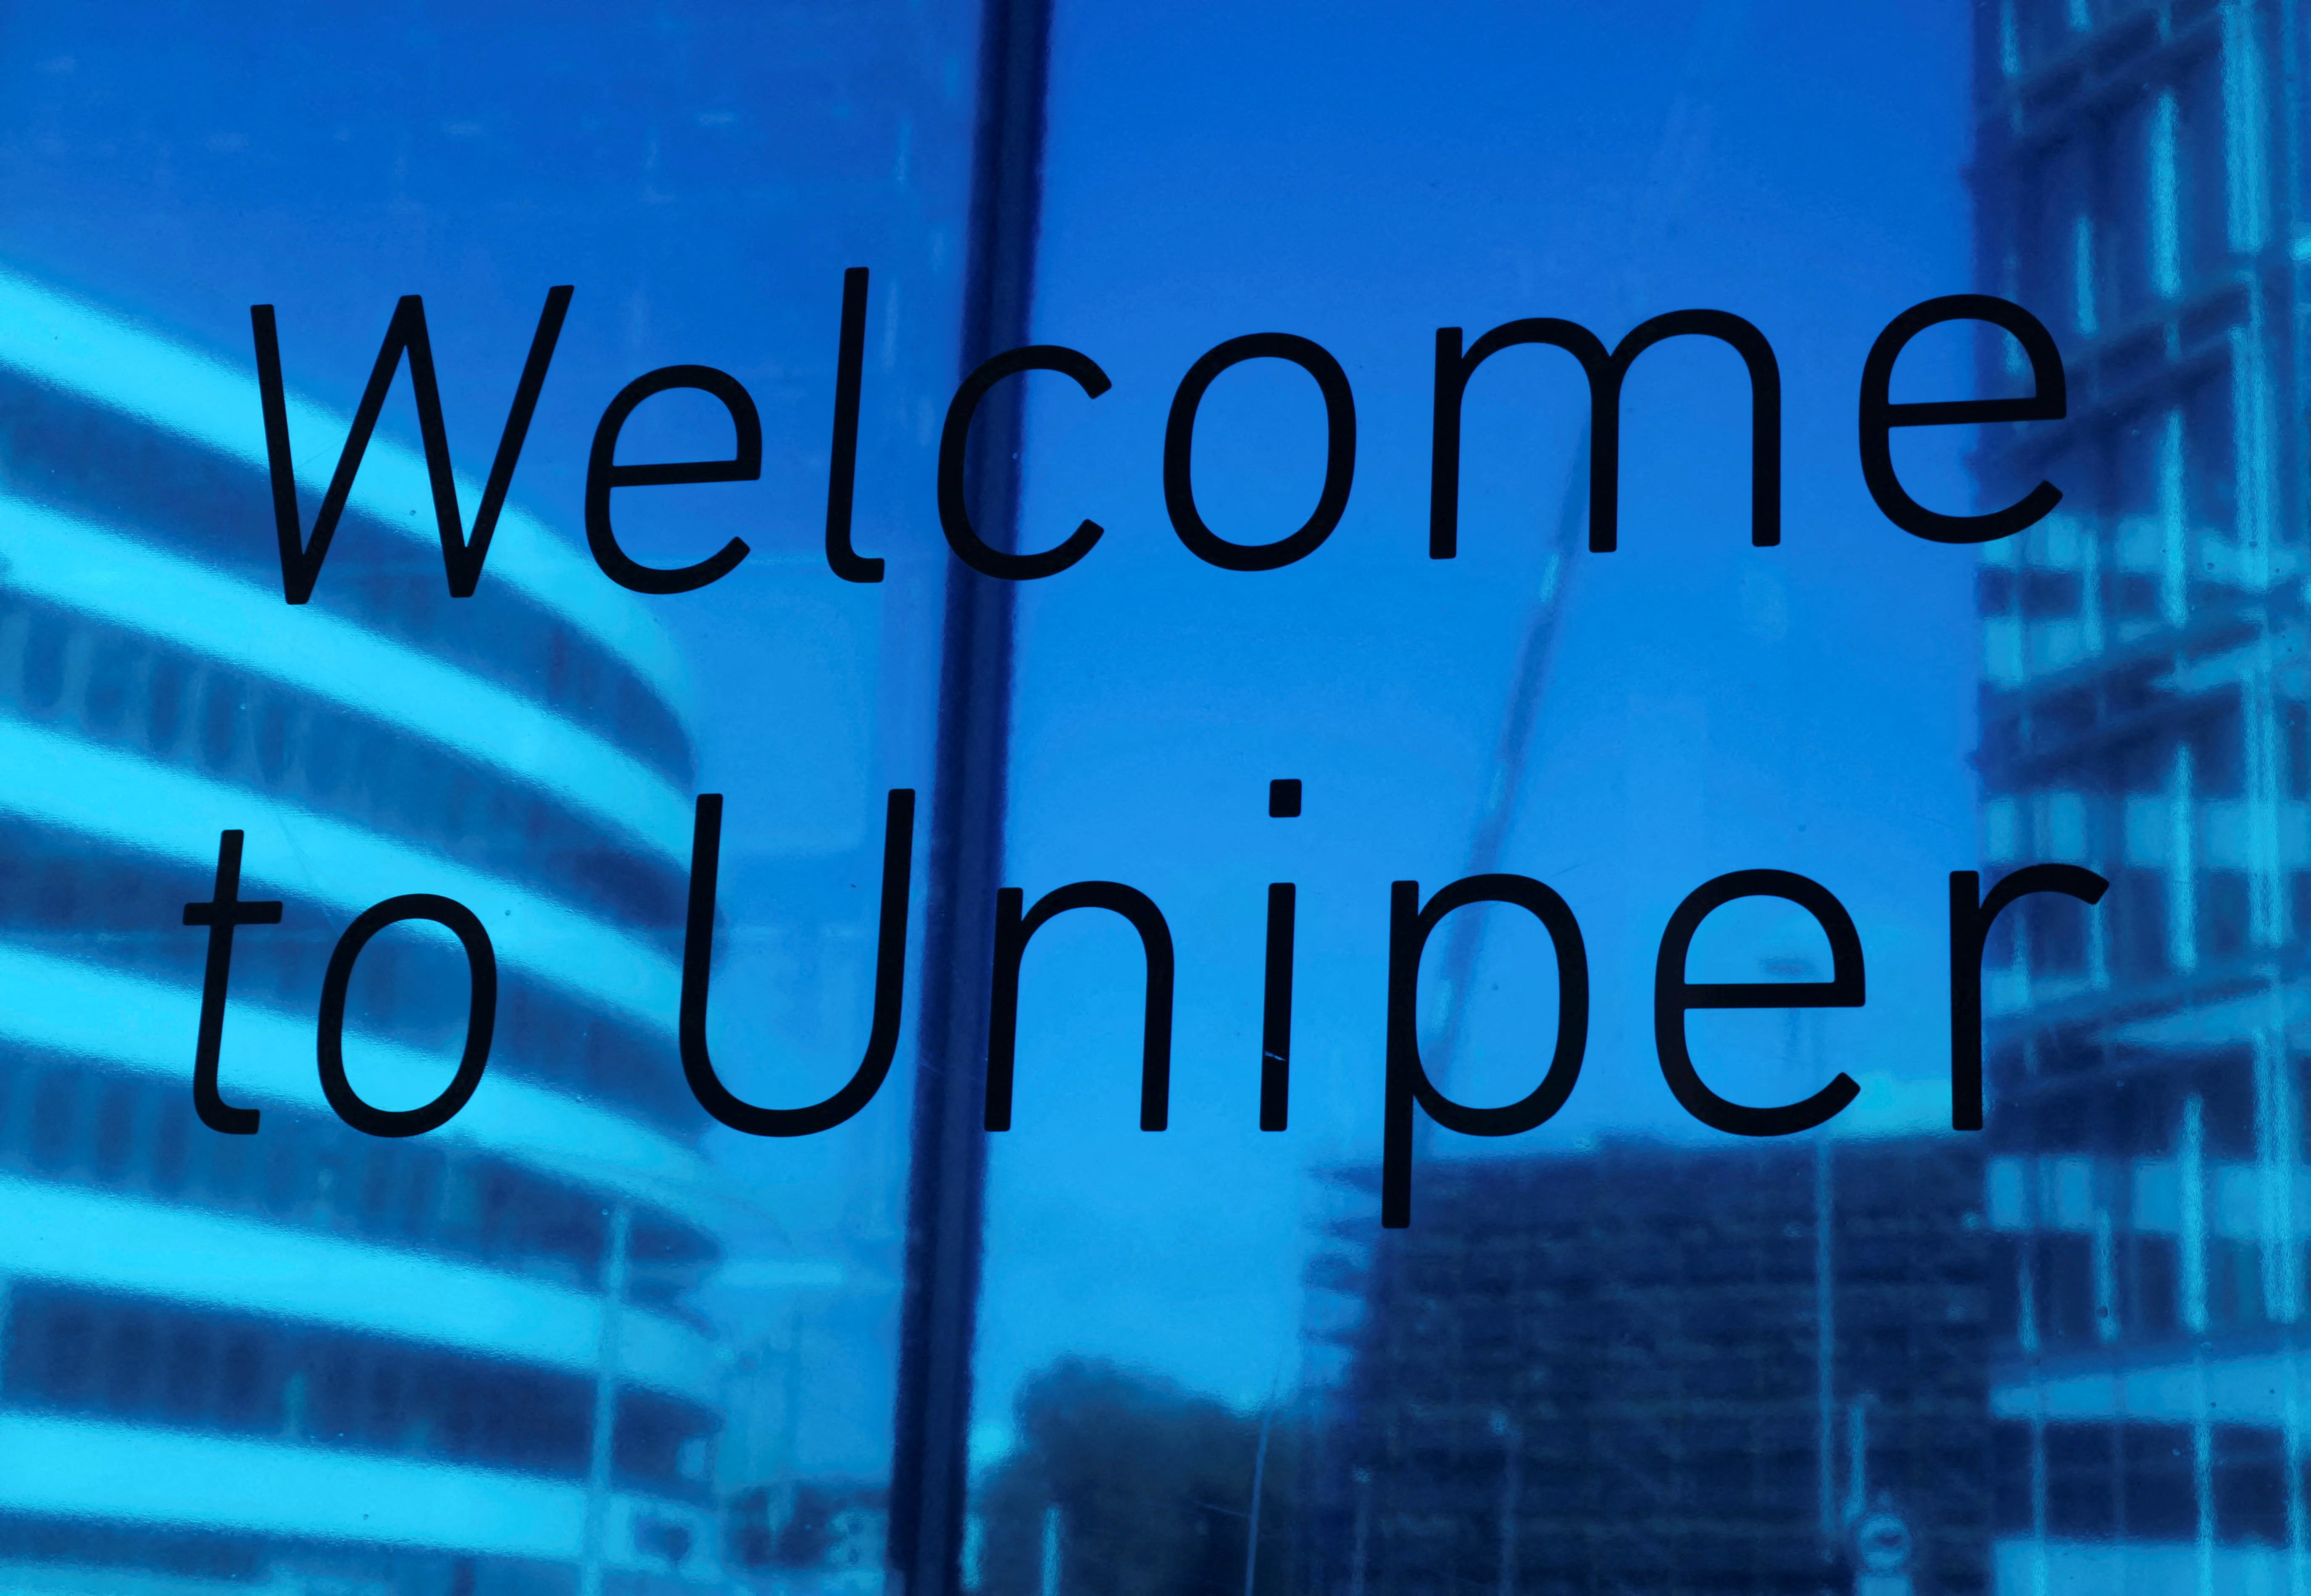 Uniper CEO Maubach addresses the media in Duesseldorf